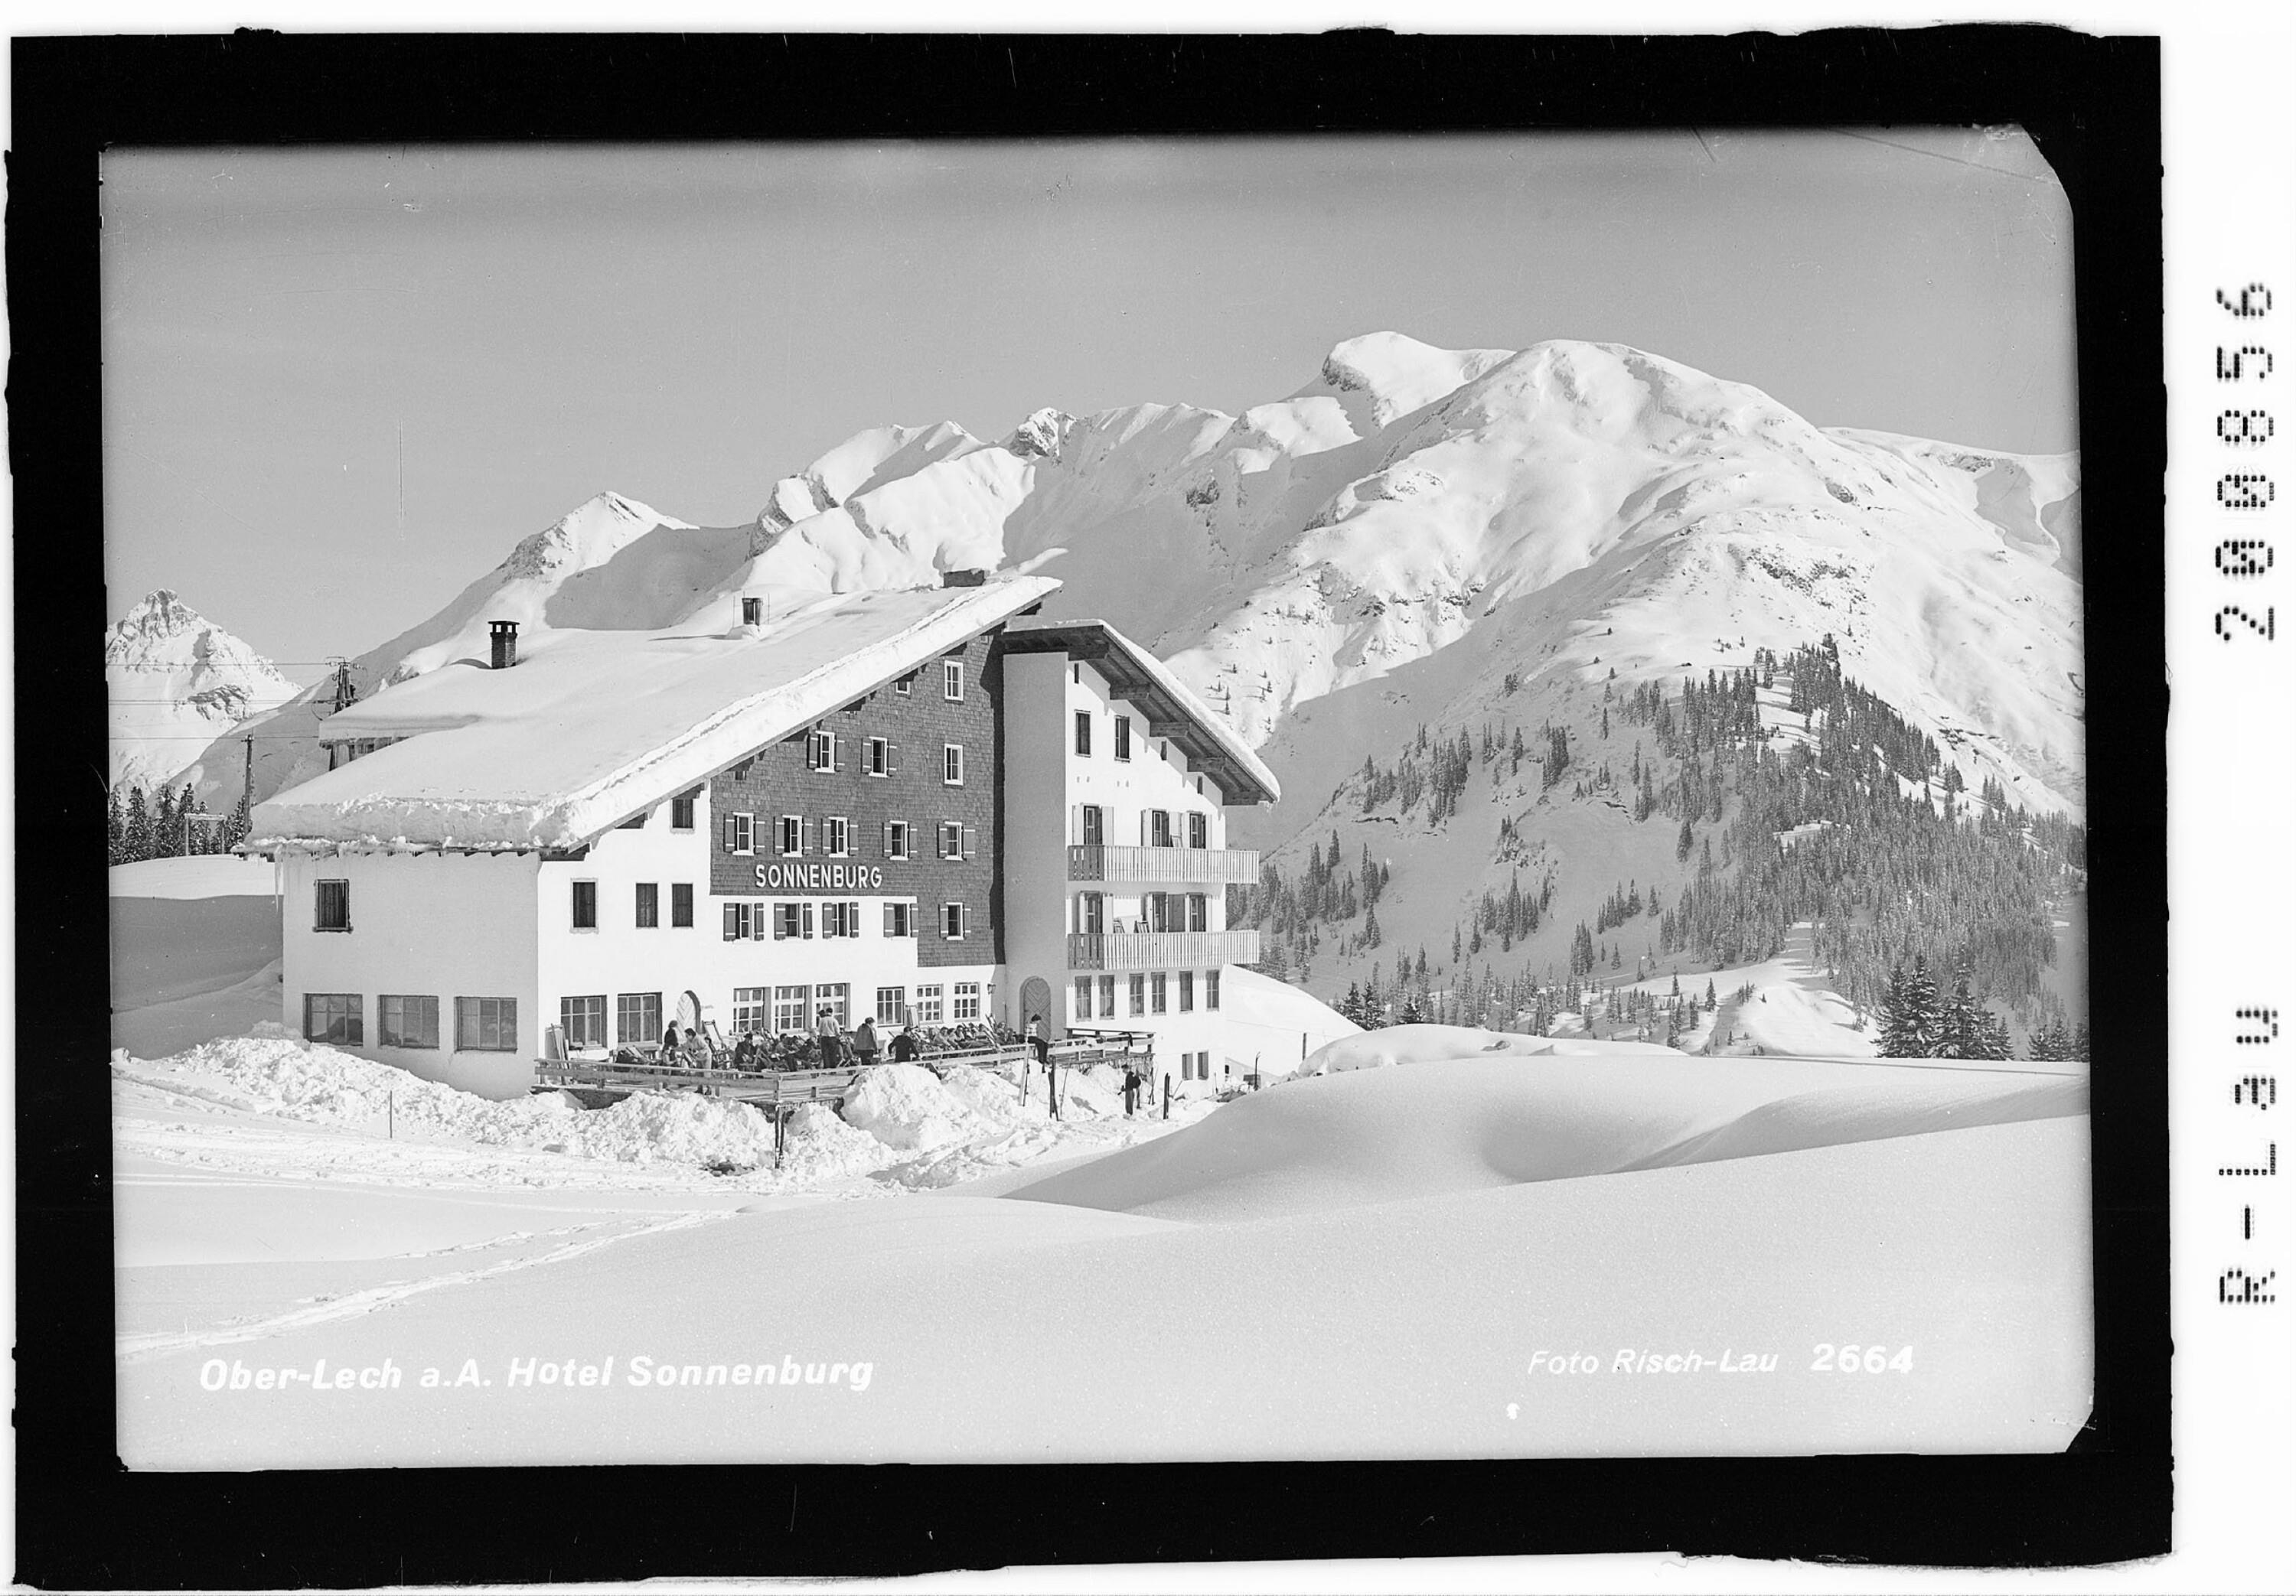 Oberlech am Arlberg Hotel Sonnenburg></div>


    <hr>
    <div class=